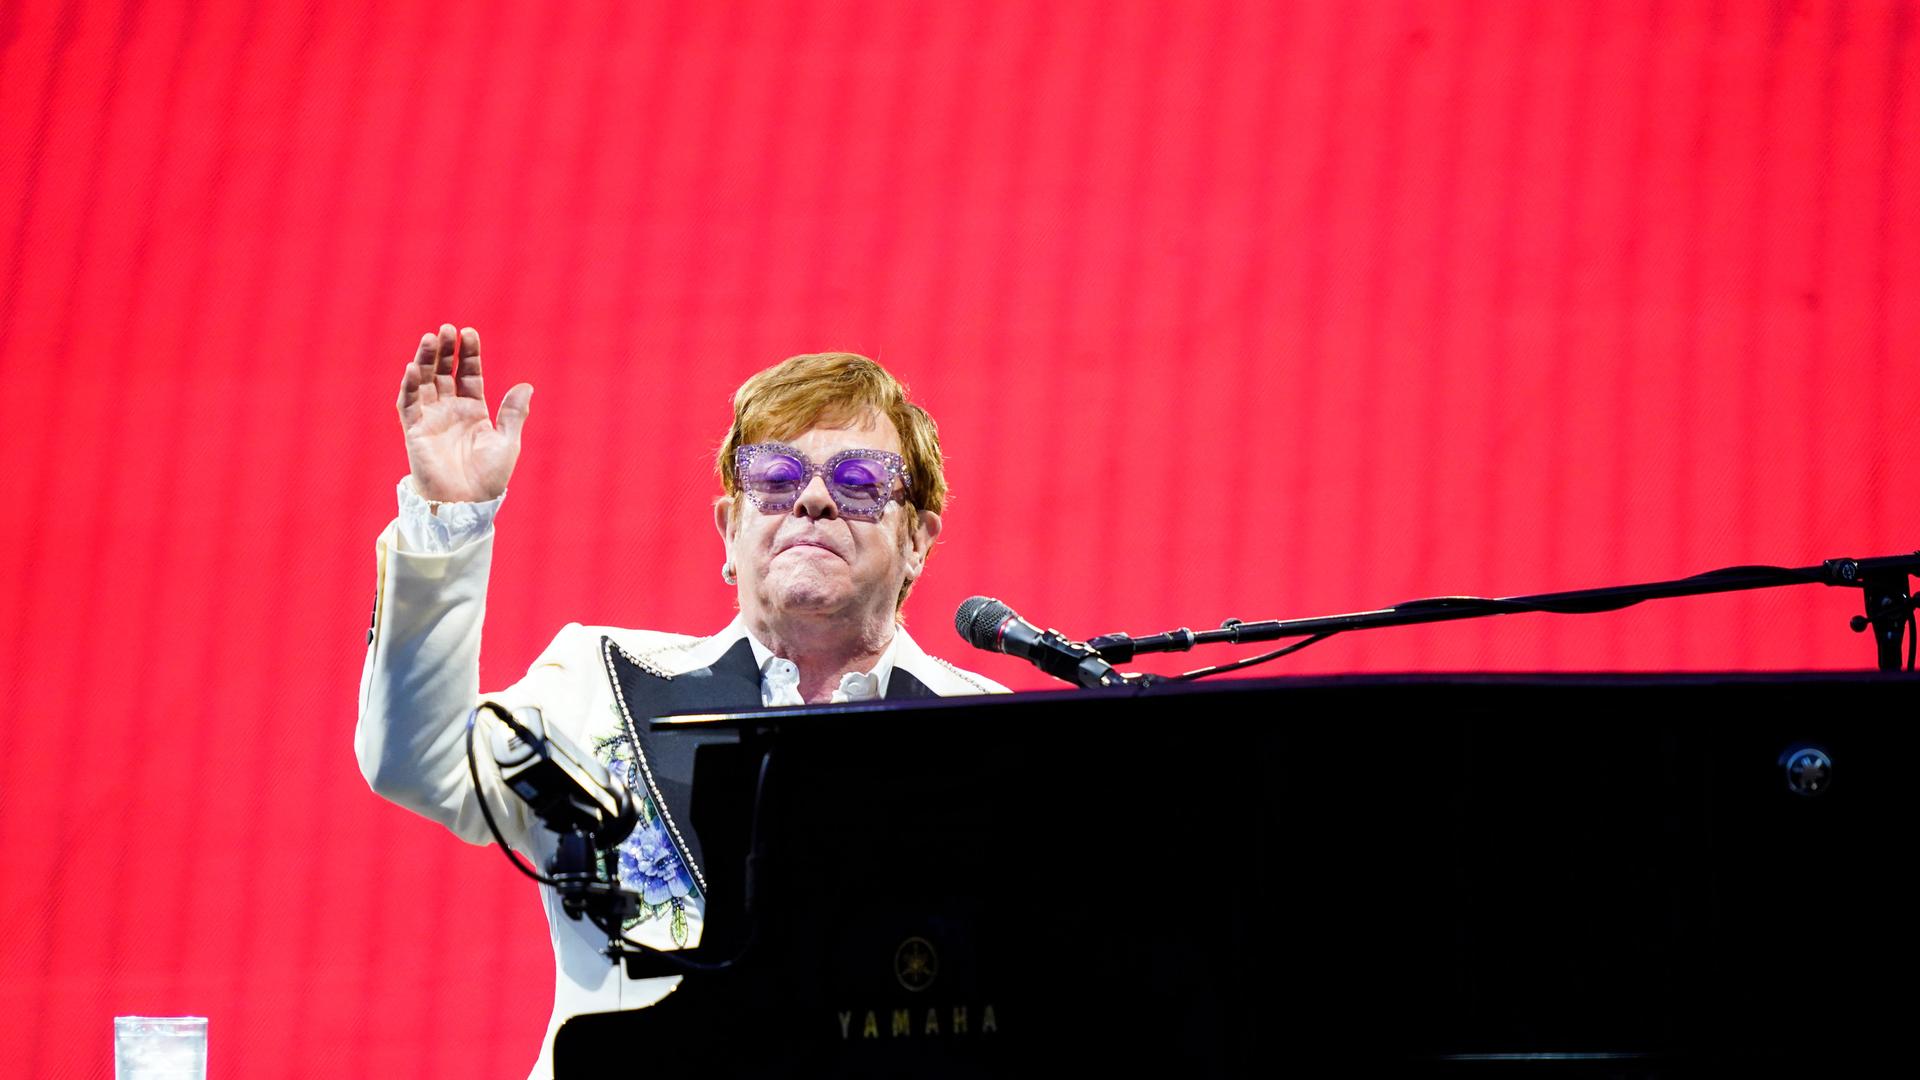 Der Musiker Elton John sitzt am Flügel auf einer Bühne vor einem roten Hintergrund